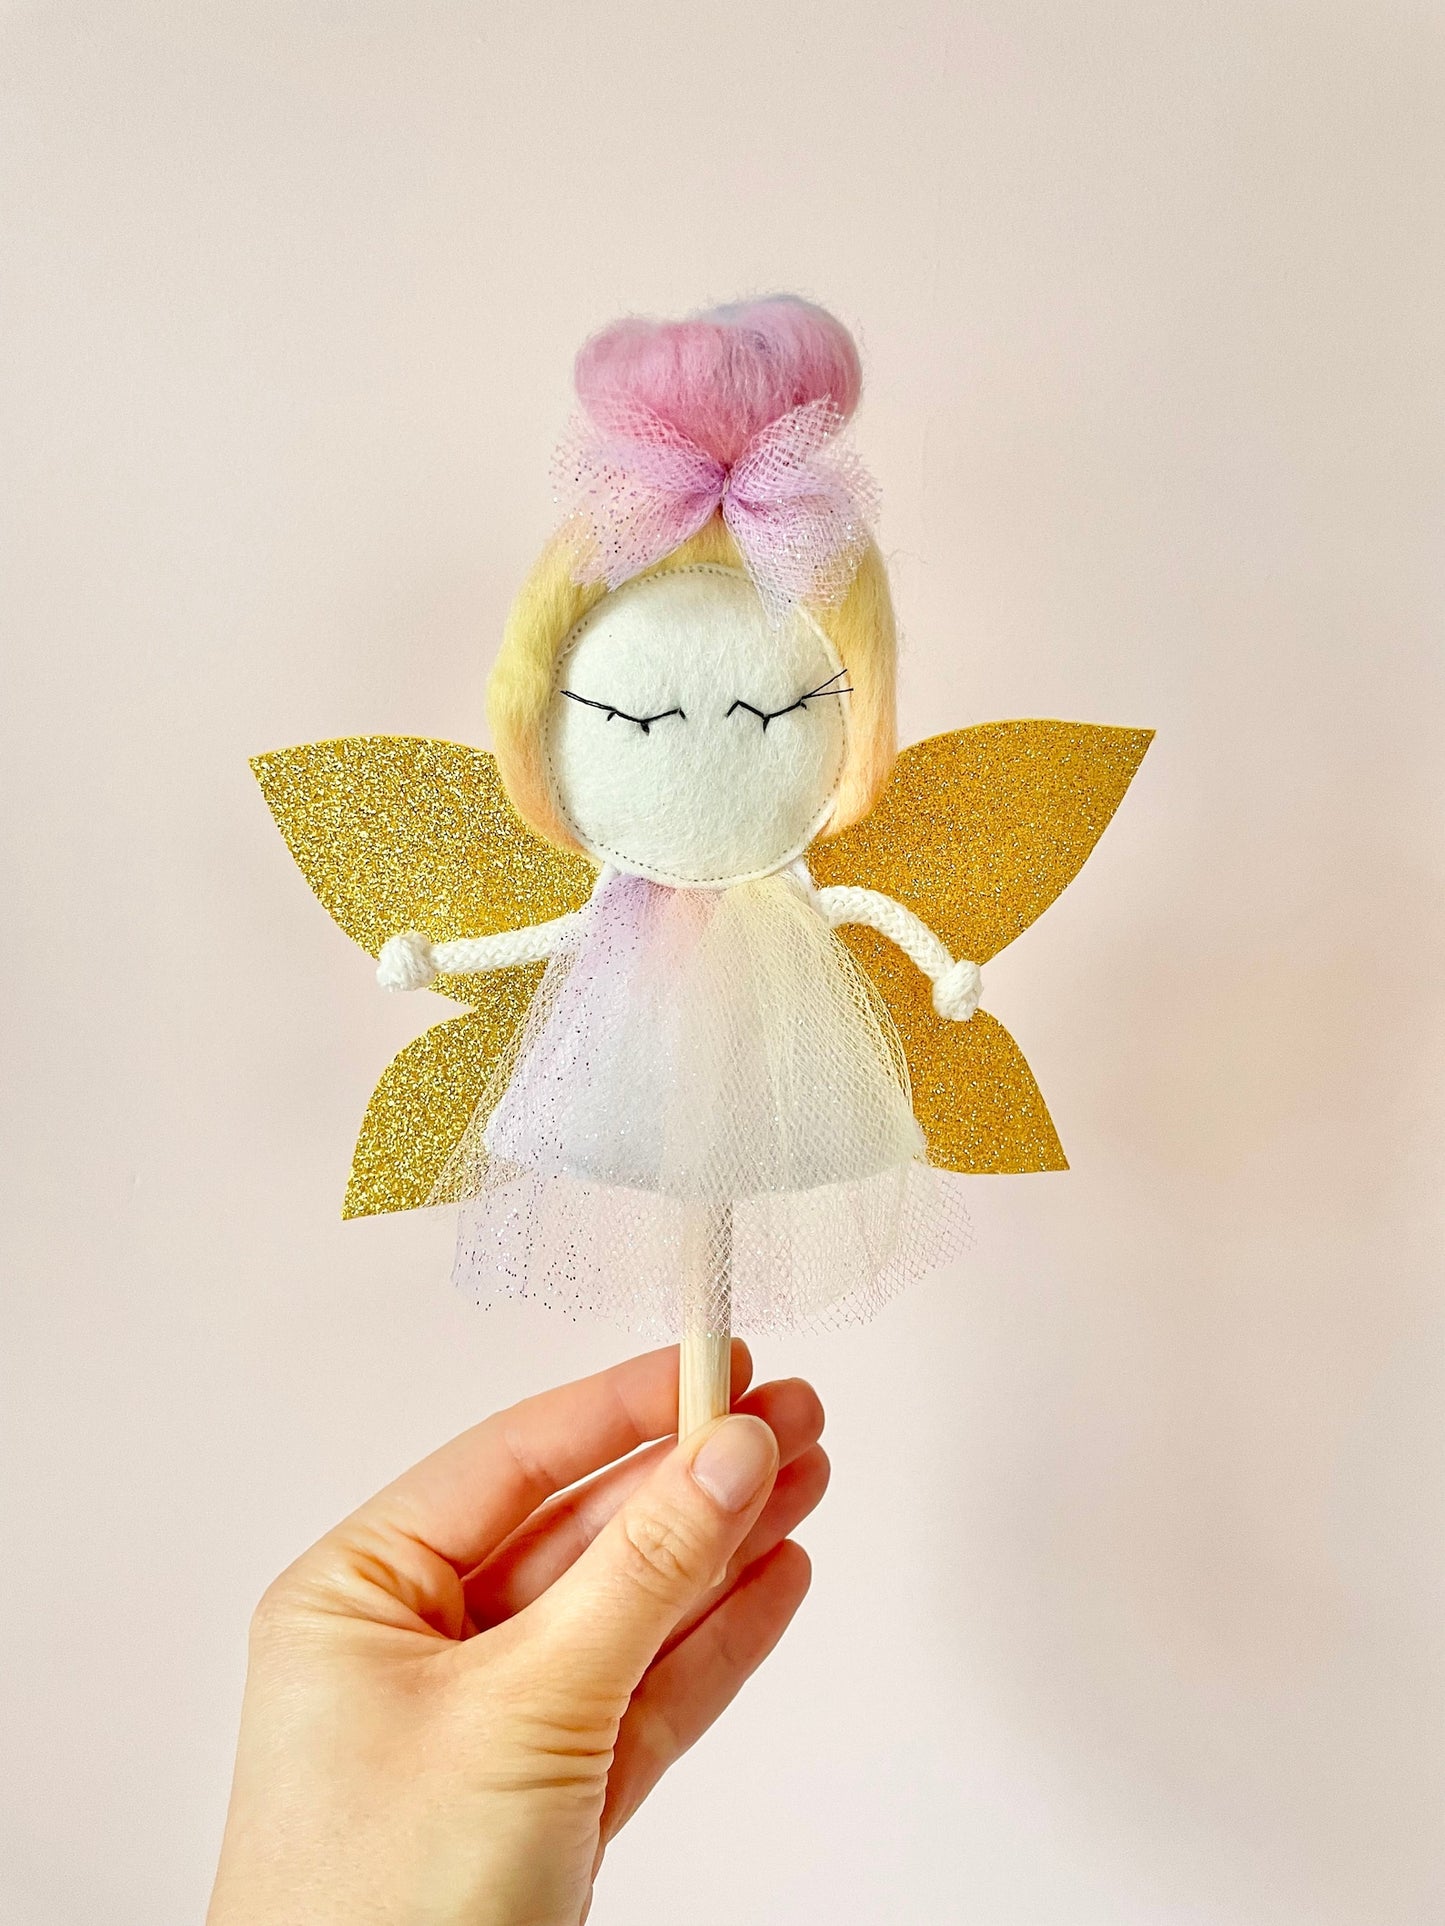 Puppet rainbow 3 set Fairy Gold Unicorn Mermaid for MIMIKI puppet theatre